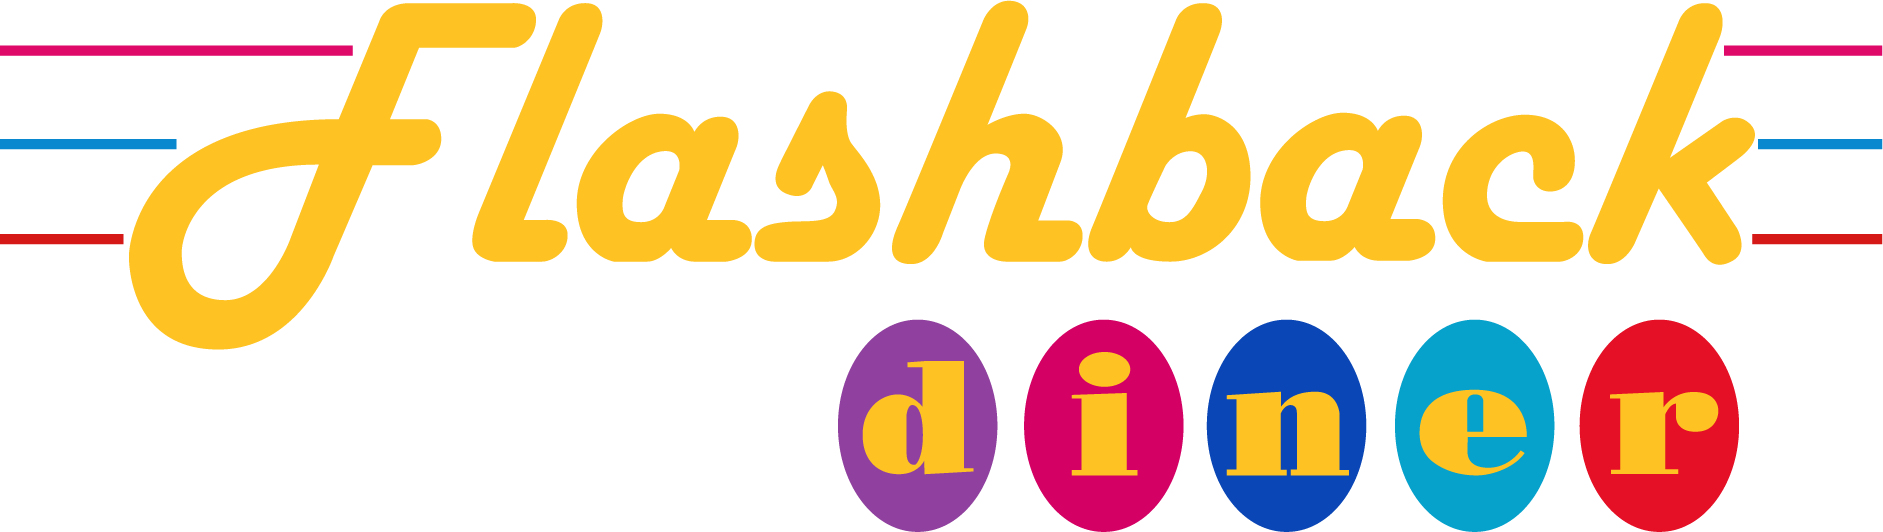 Flashback Diner Logo